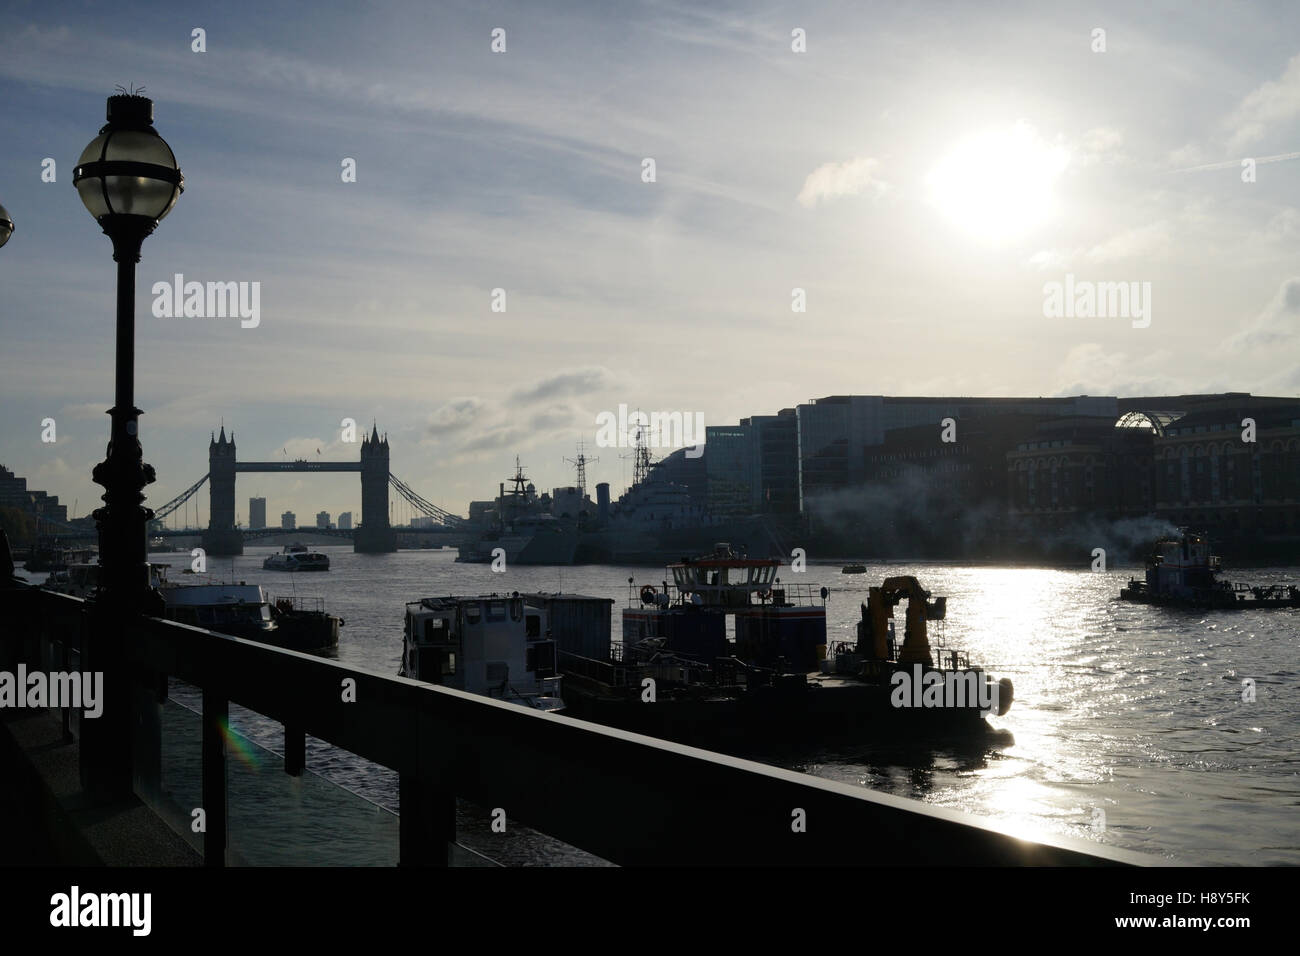 The River Thames, London, UK Stock Photo